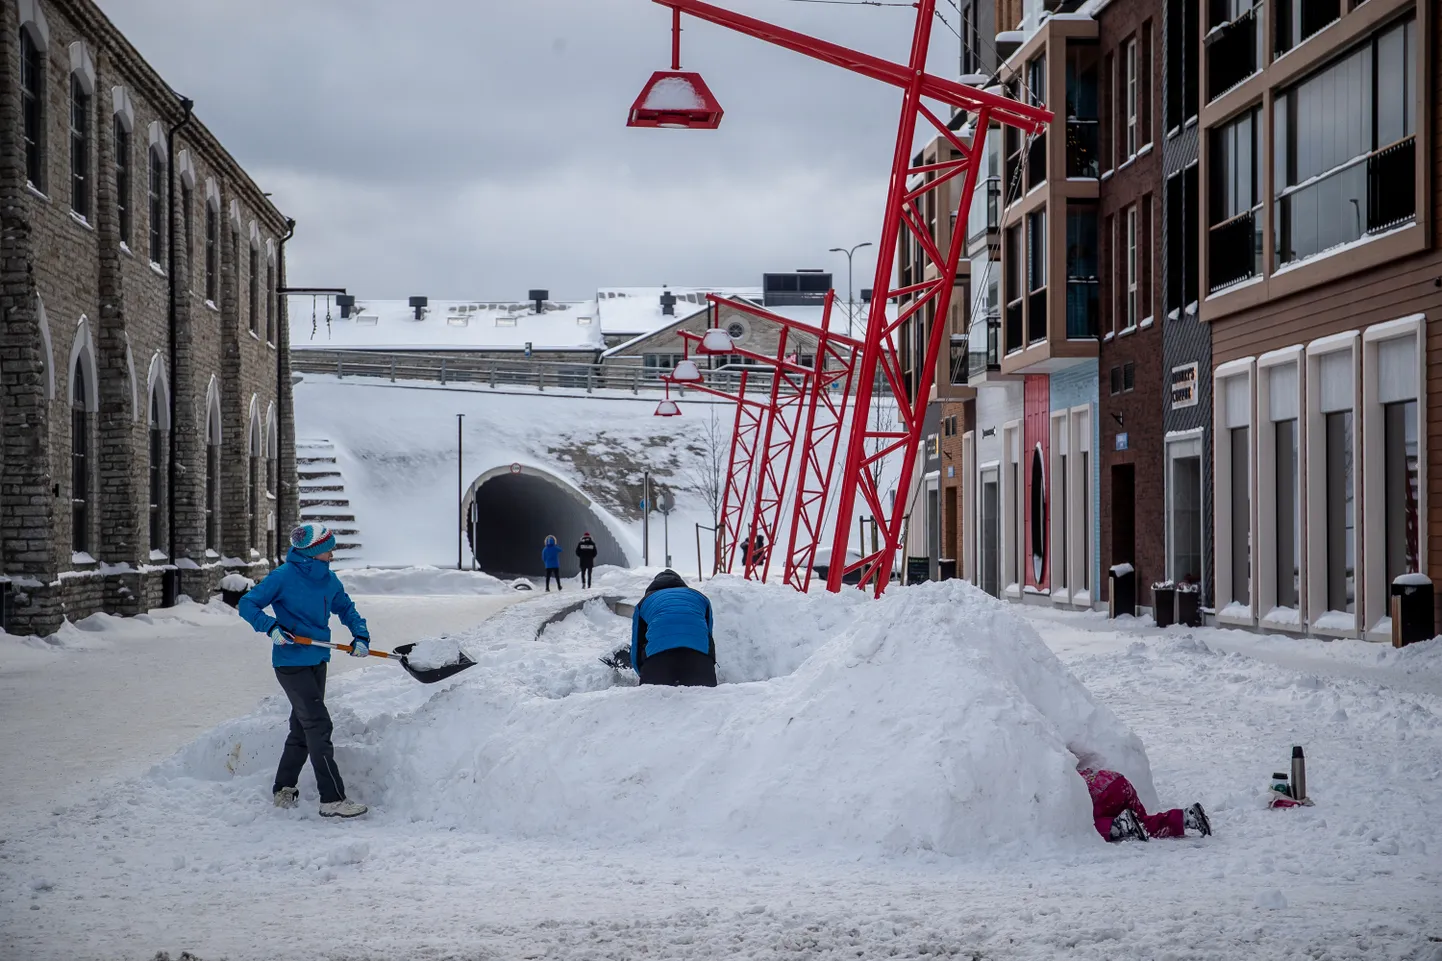 Строительство снежного городка в одном из престижных жилых районов Таллинна - квартале Ноблесснера.